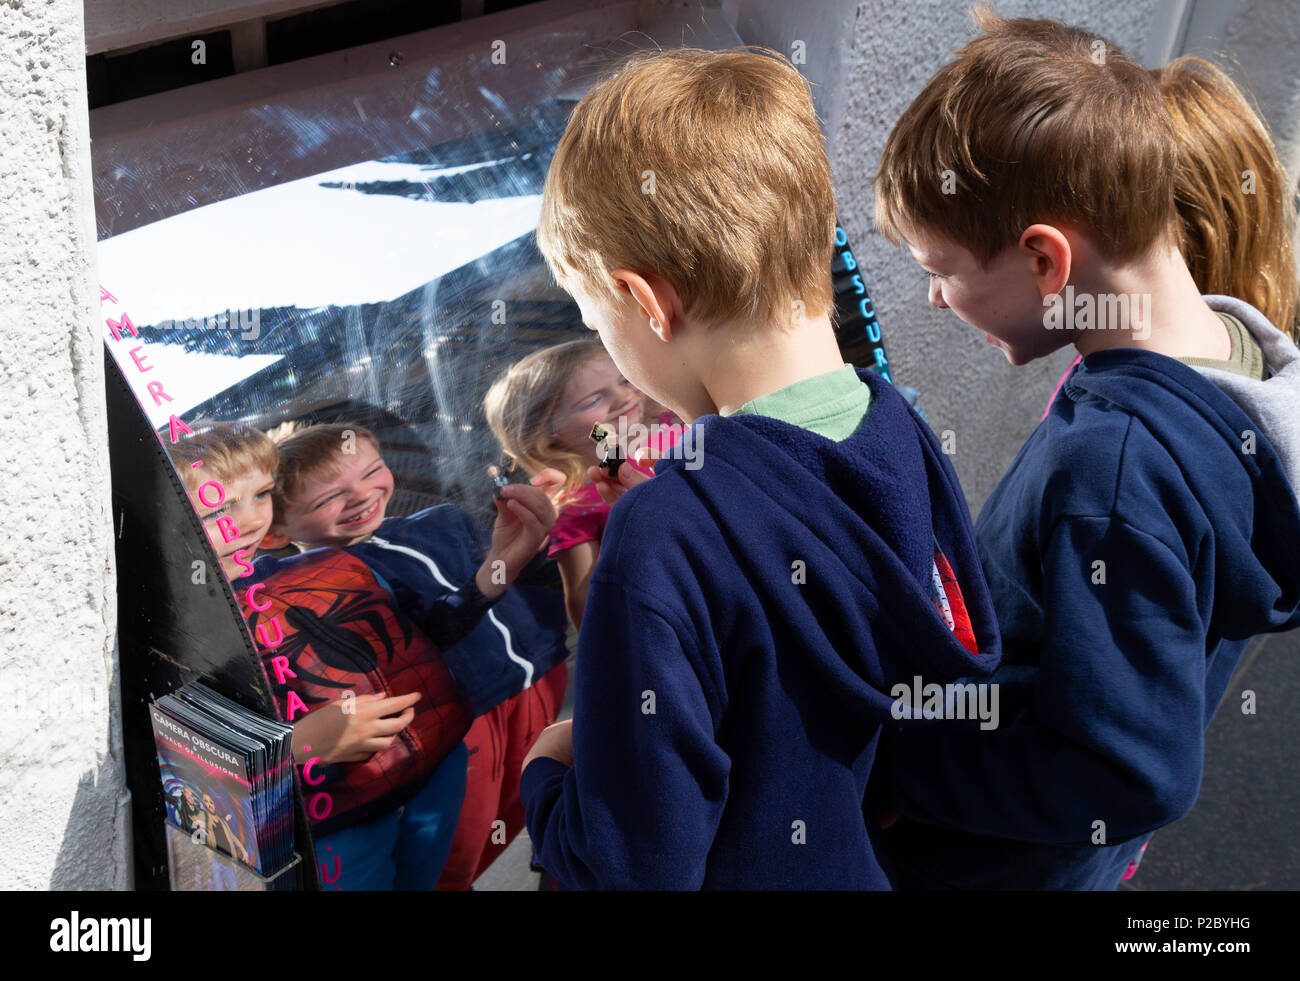 Des enfants heureux d'avoir du plaisir avec leur reflet dans un miroir de distorsion, Édimbourg. Scotland UK Banque D'Images